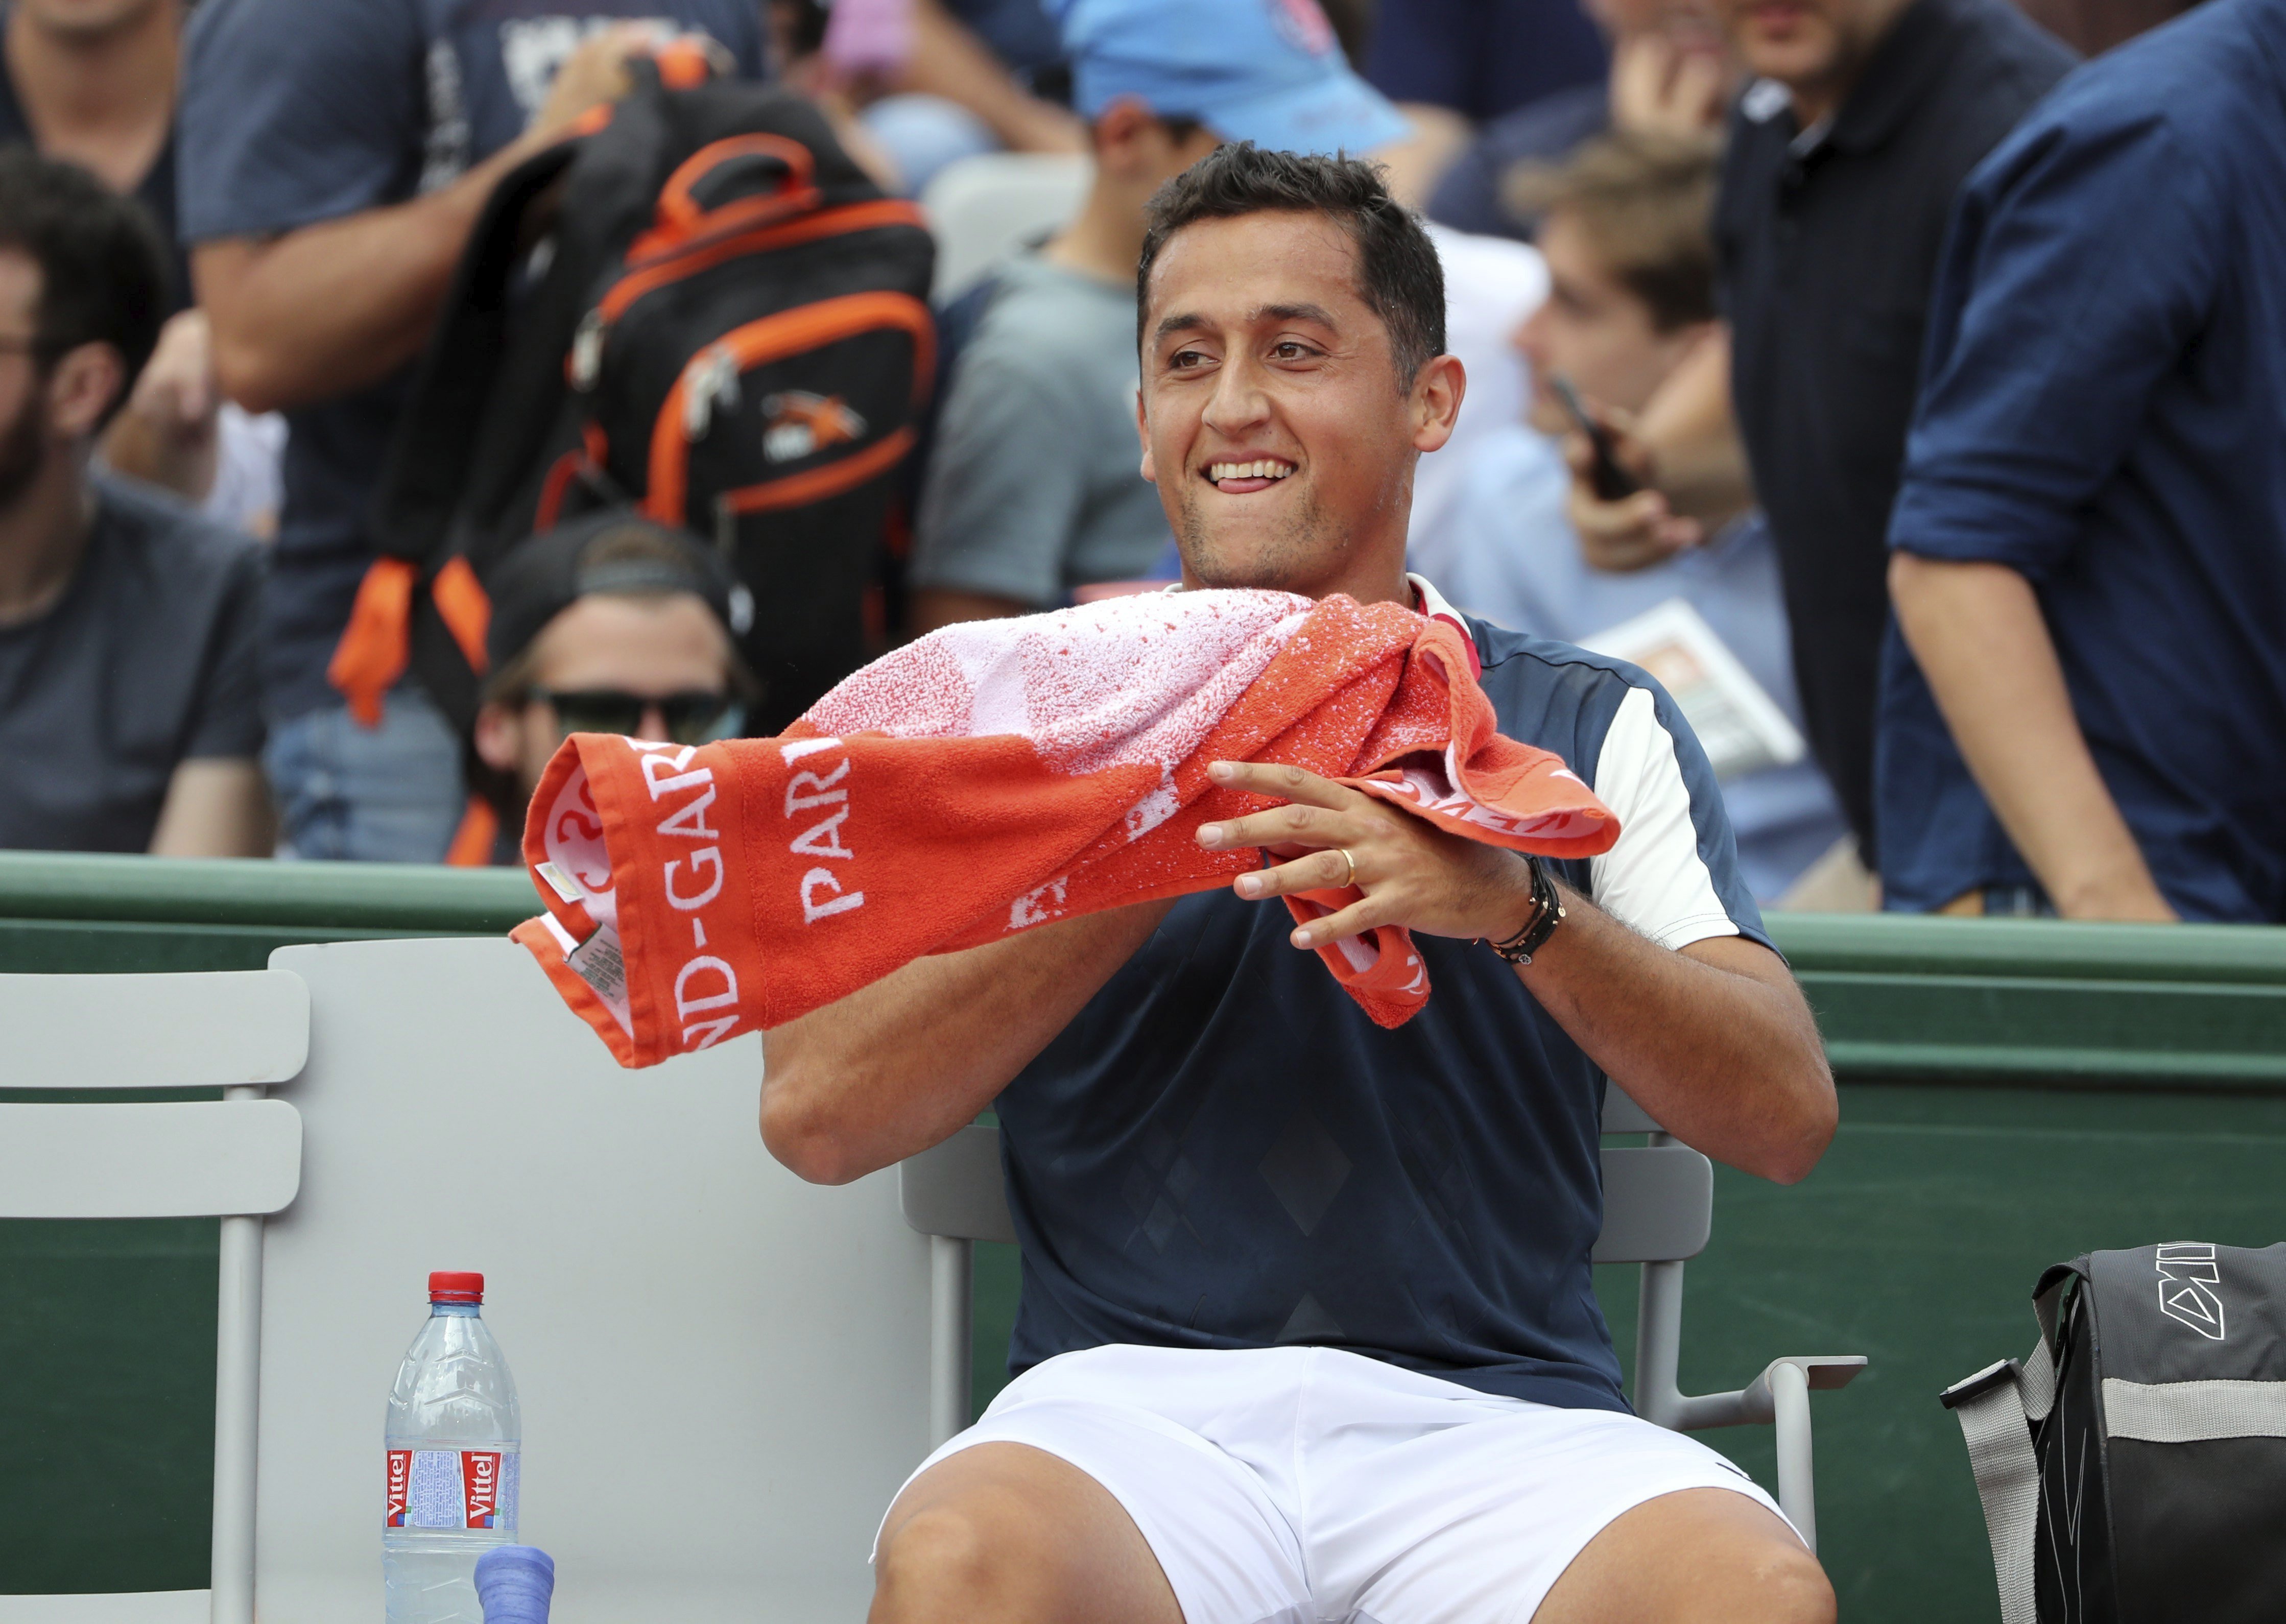 Nicolás Almagro plora desconsoladament en lesionar-se a Roland Garros